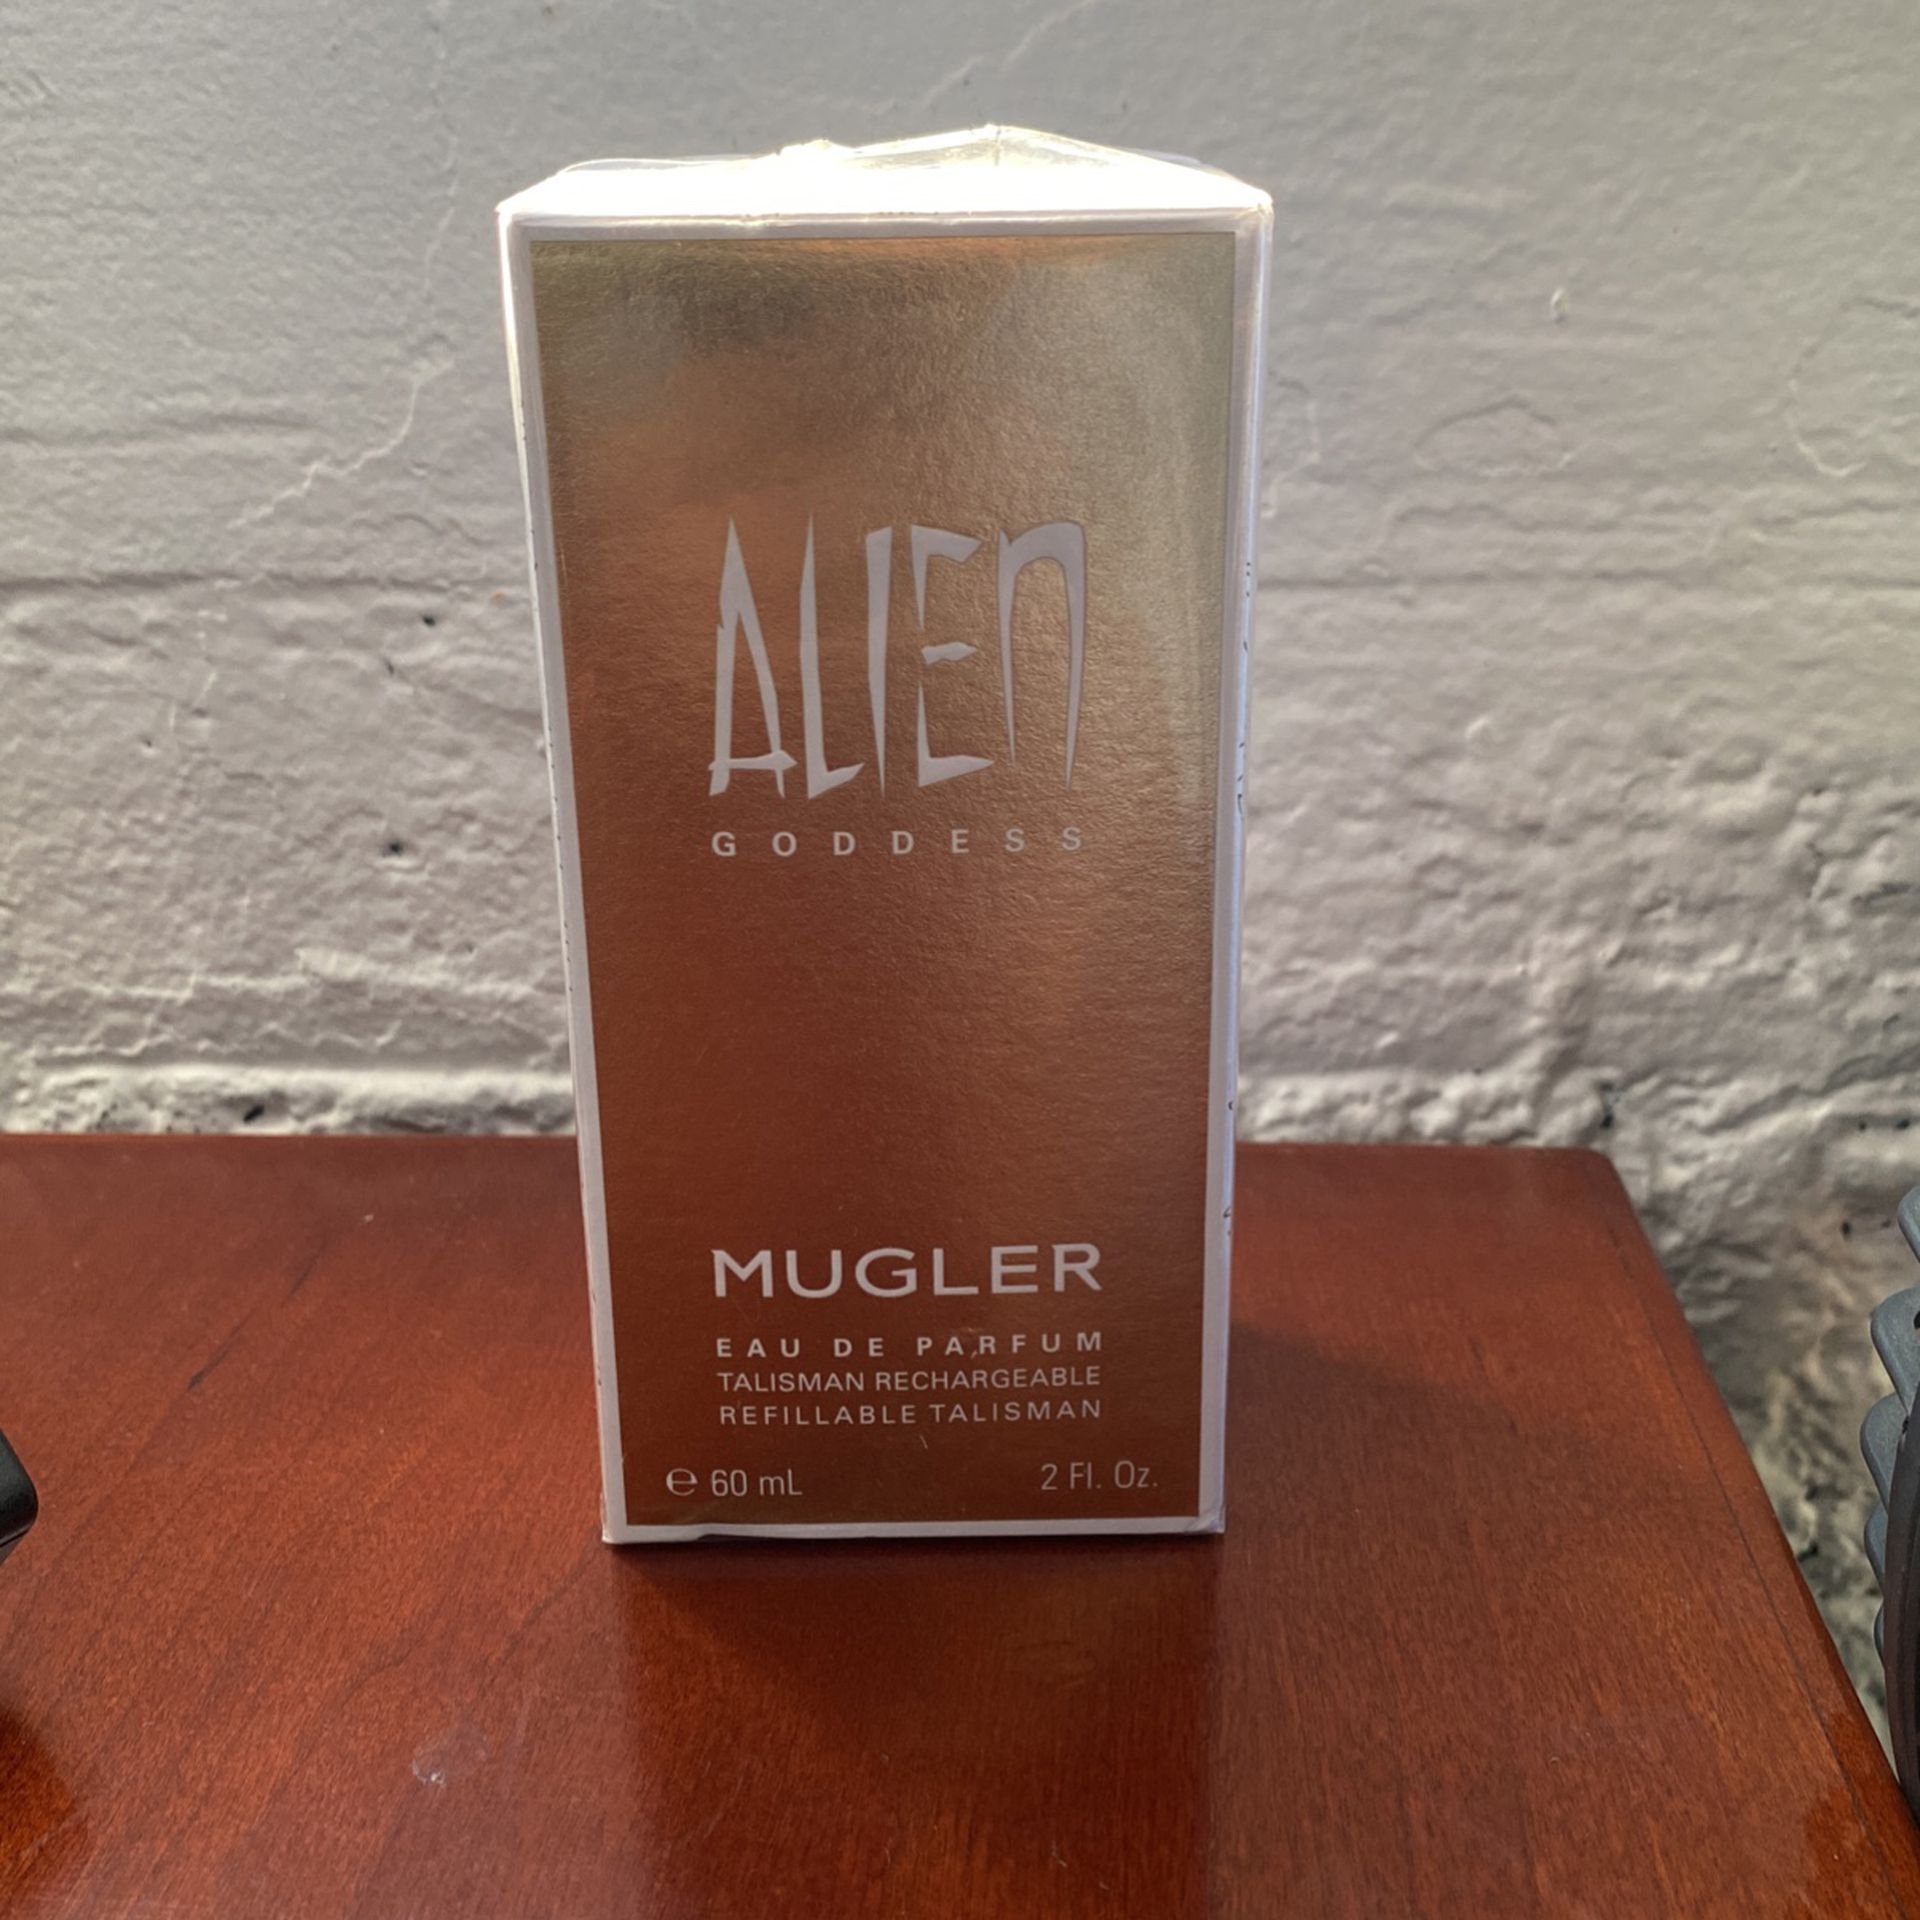 New: Mugler Alien Goddess